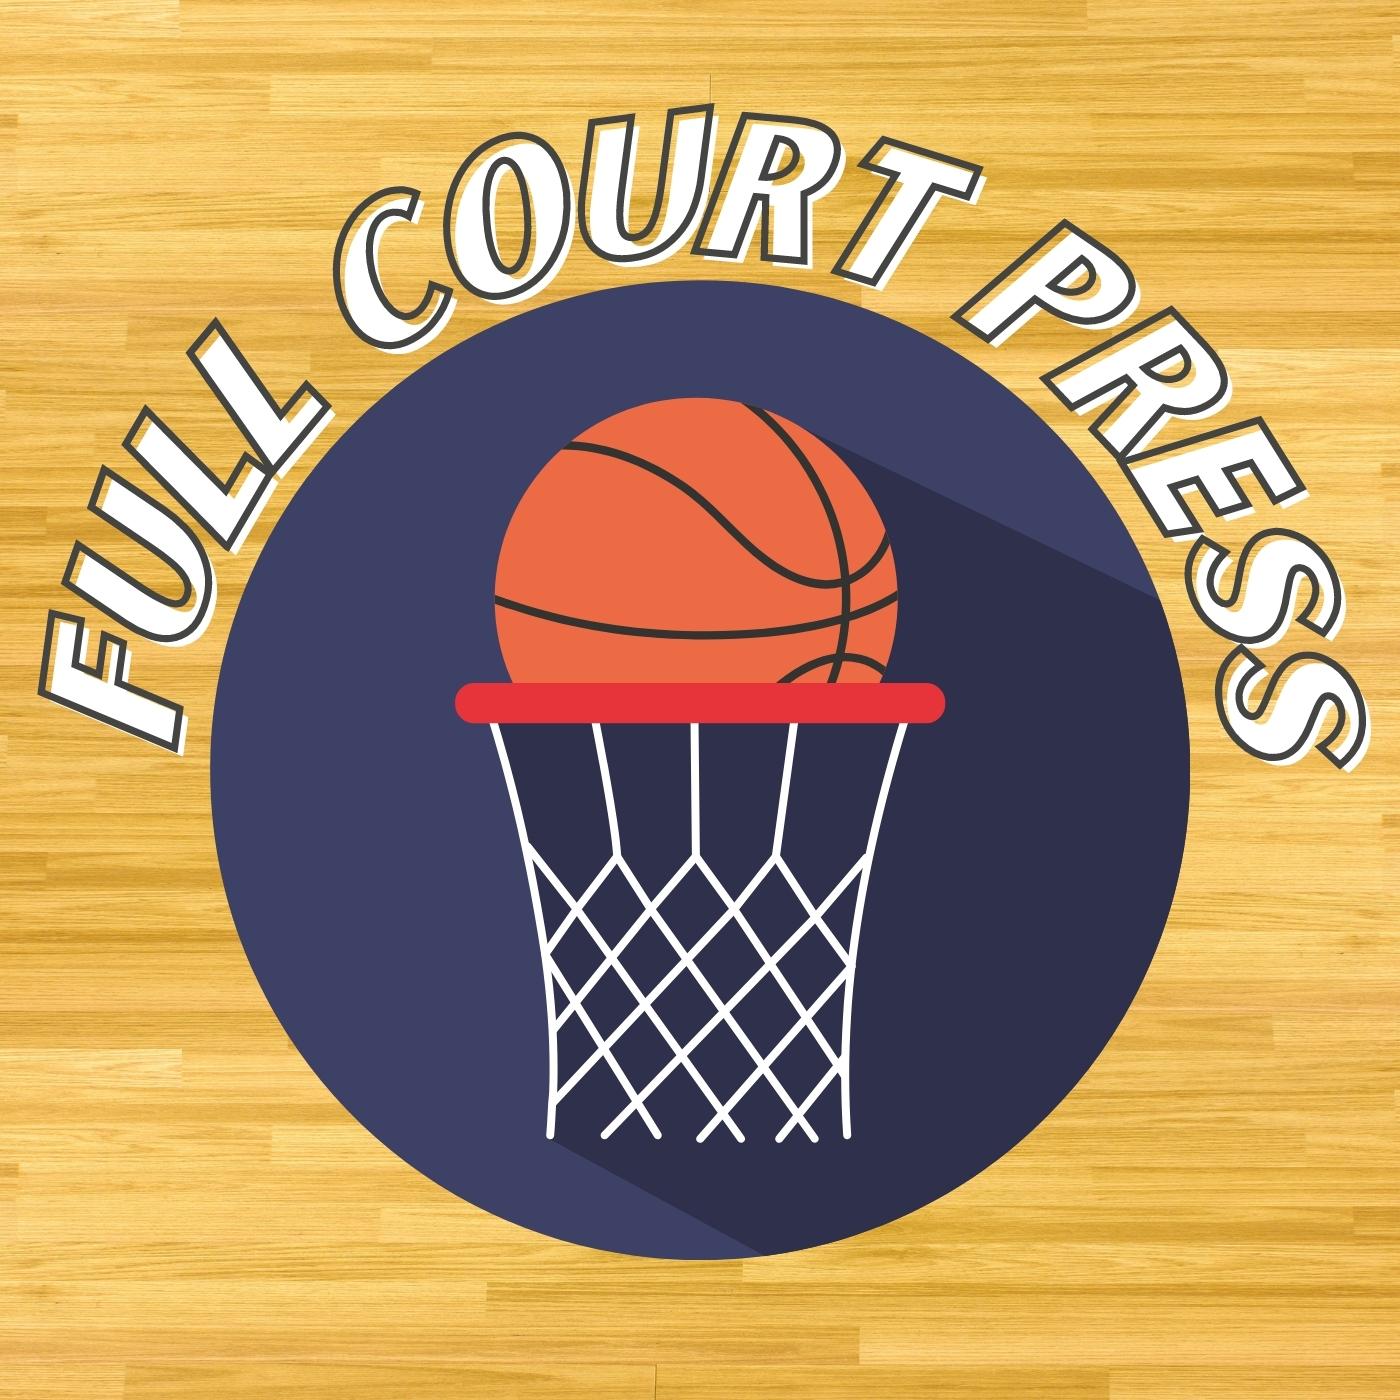 Full Court Press S02.E15 - All Star Recap + Start, Bench, Cut